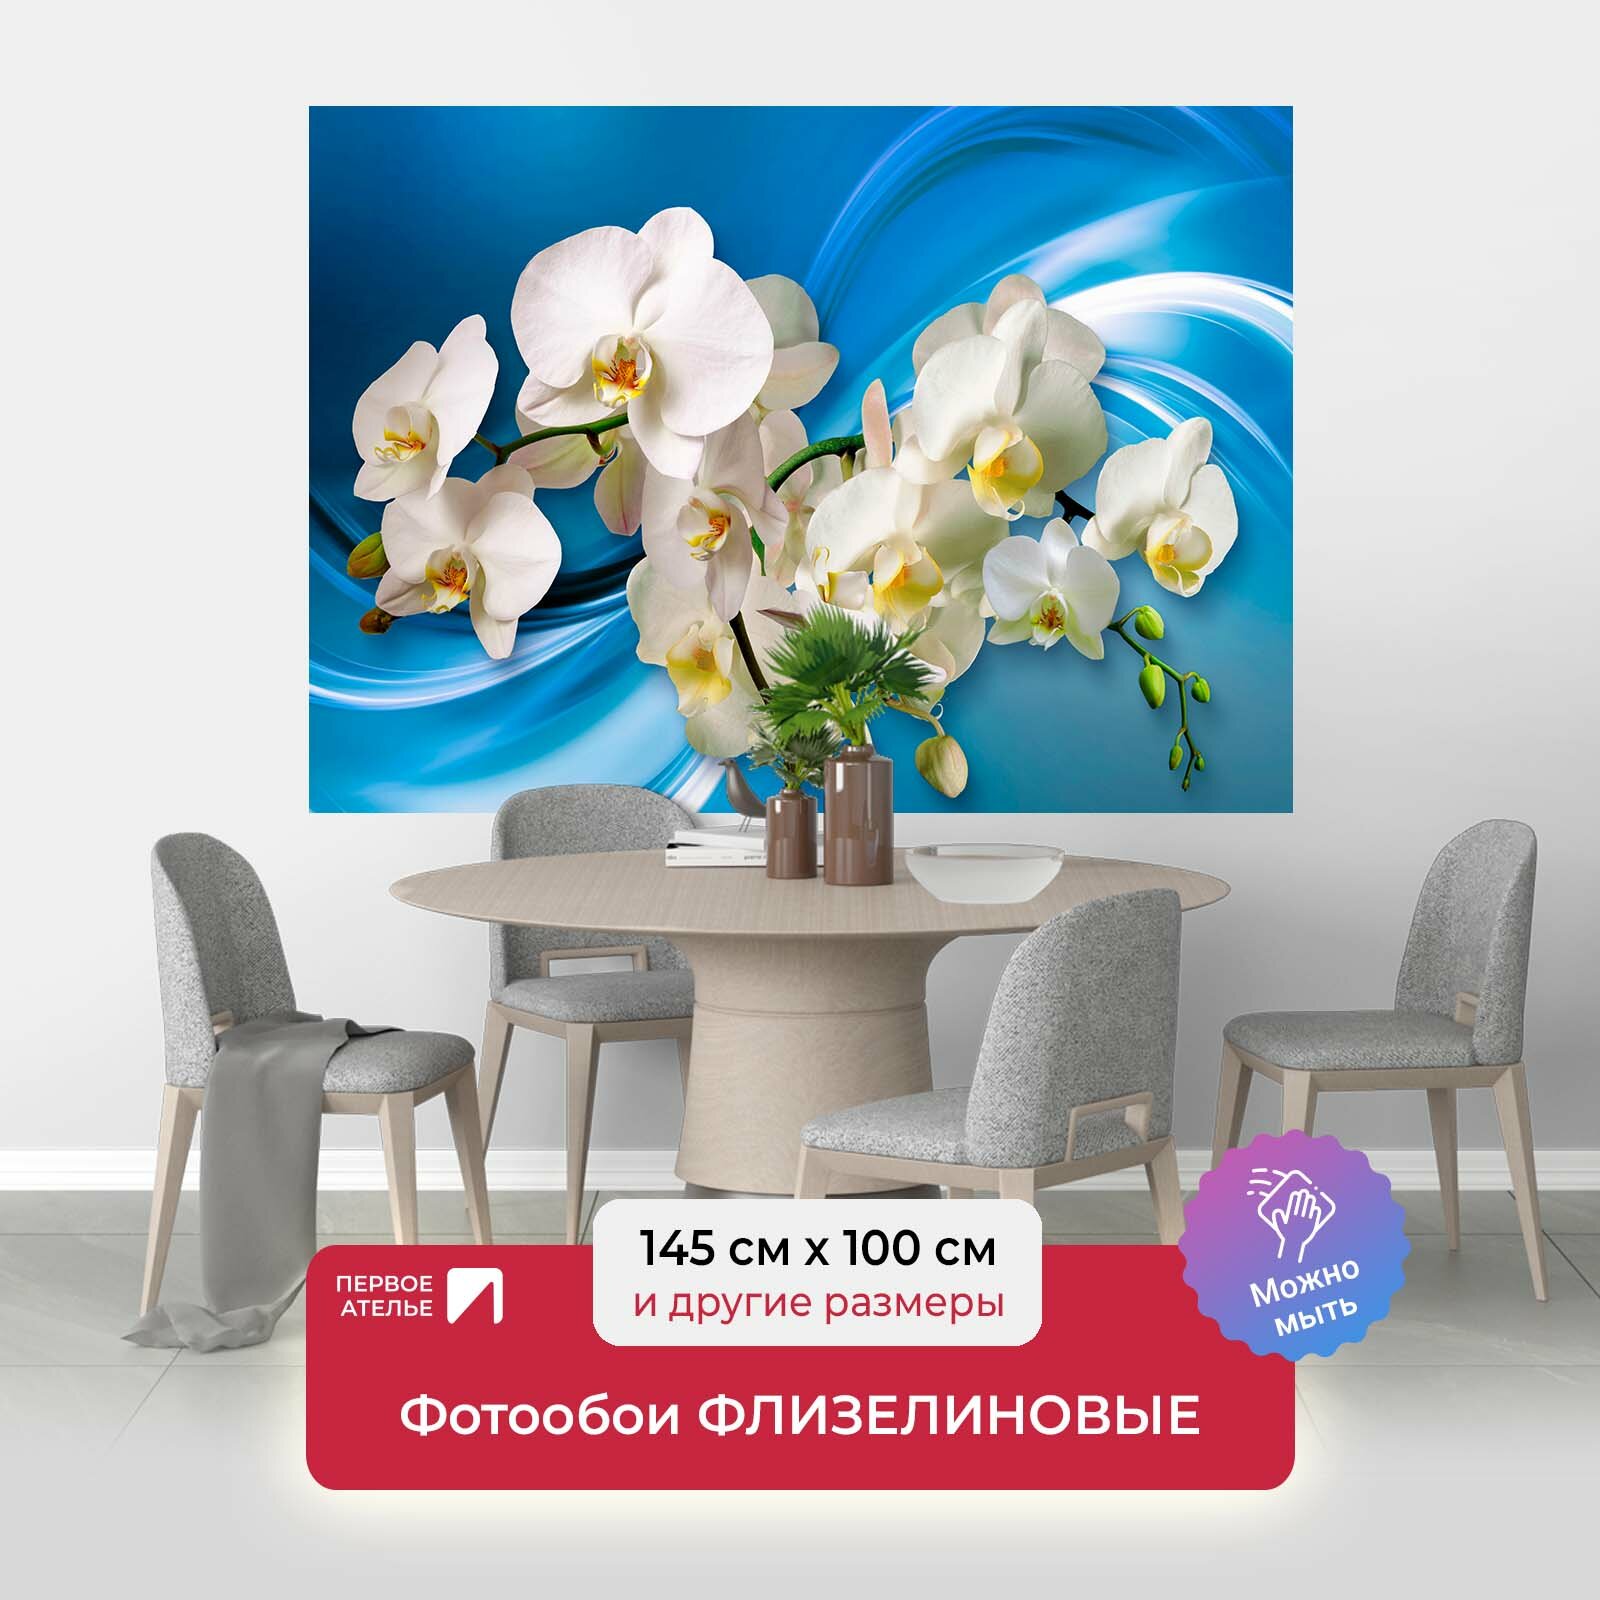 Фотообои на стену первое ателье "Орхидеи на голубом шелке" 145х100 см (ШхВ), флизелиновые Premium